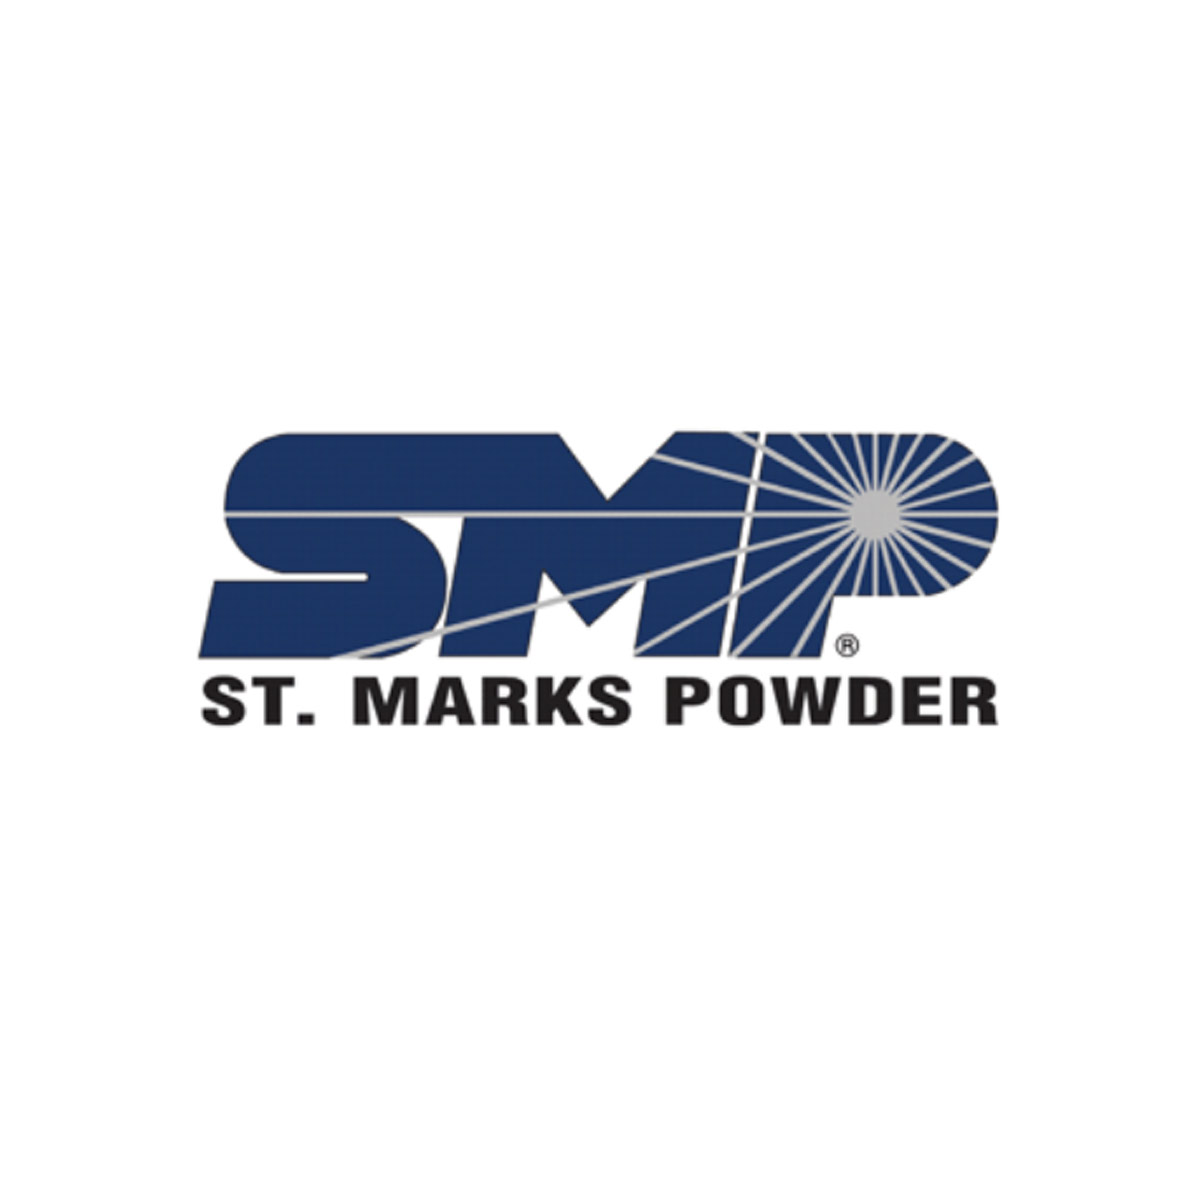 St. Marks Powder